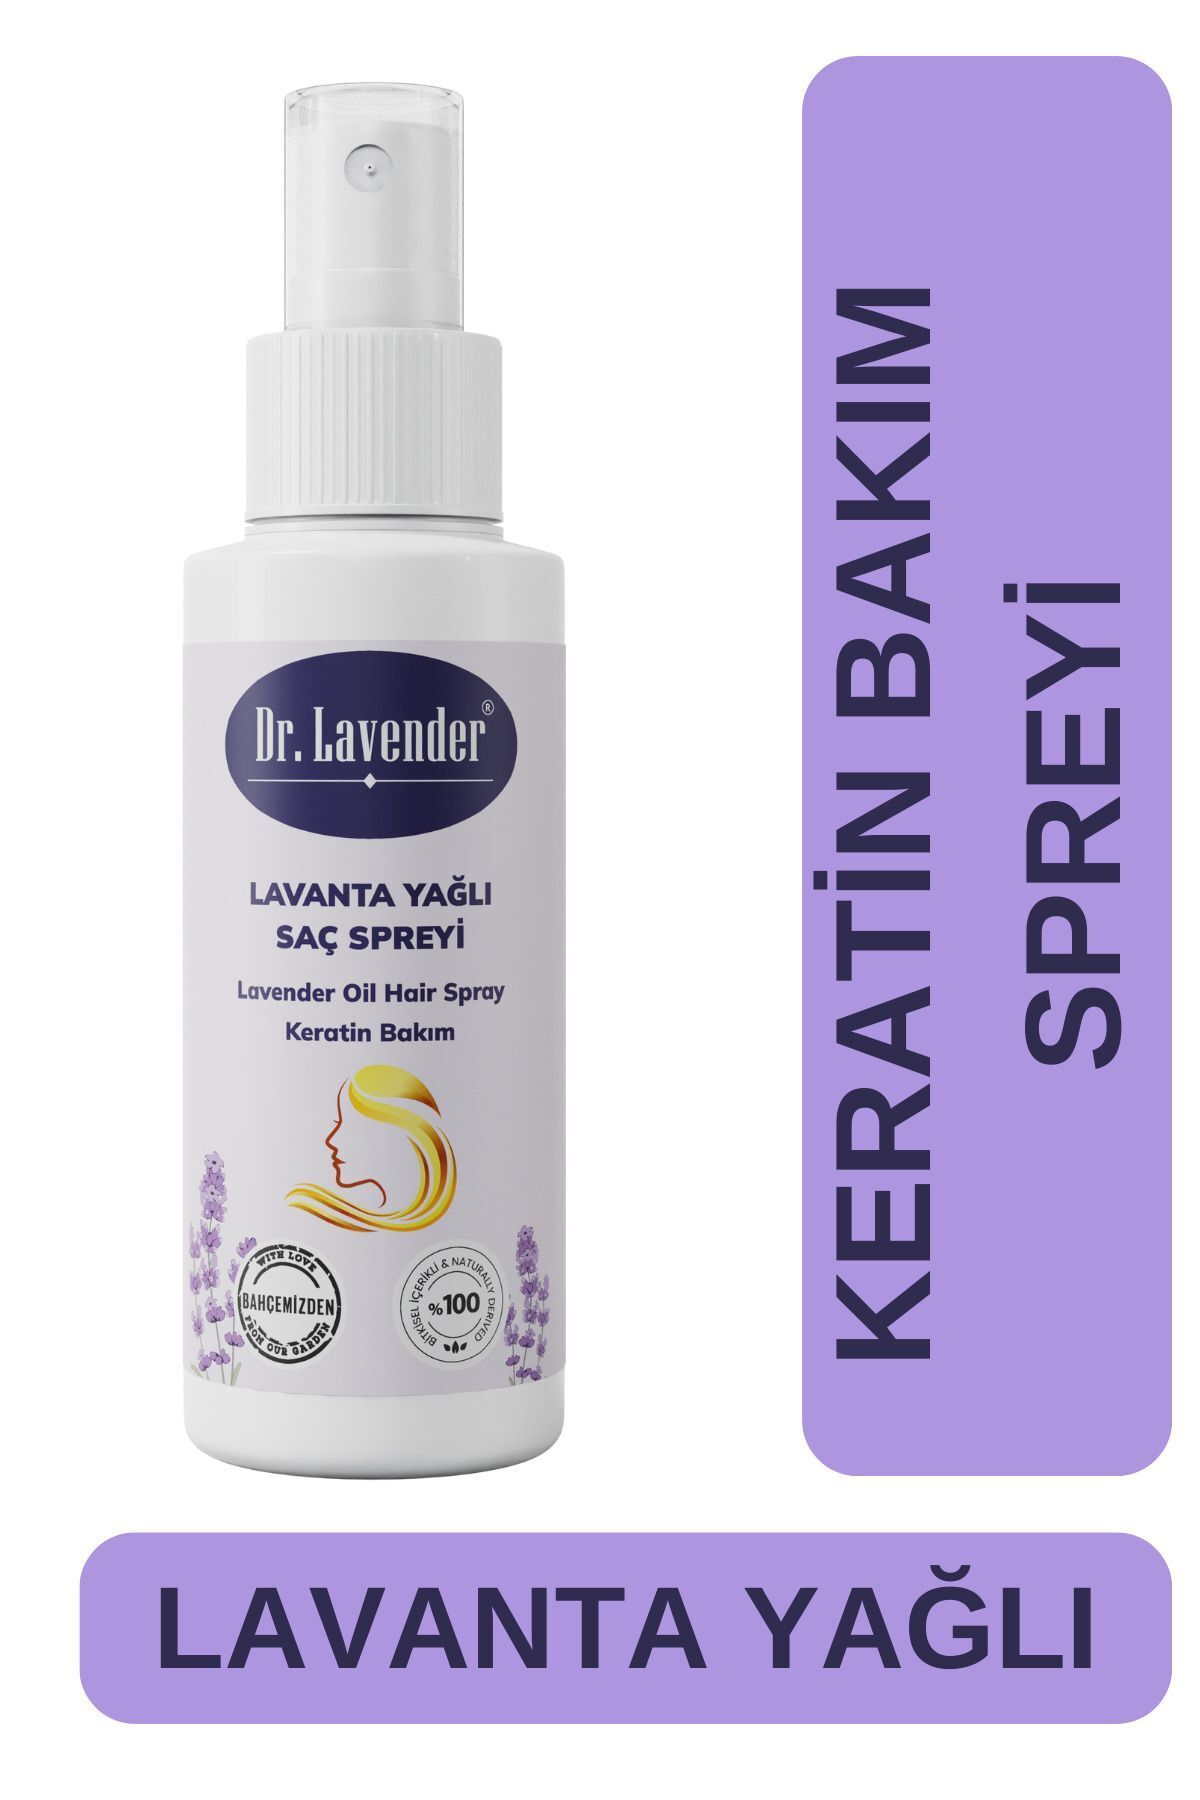 Dr. Lavender Doğal Lavanta Yağlı Keratin Bakım Spreyi